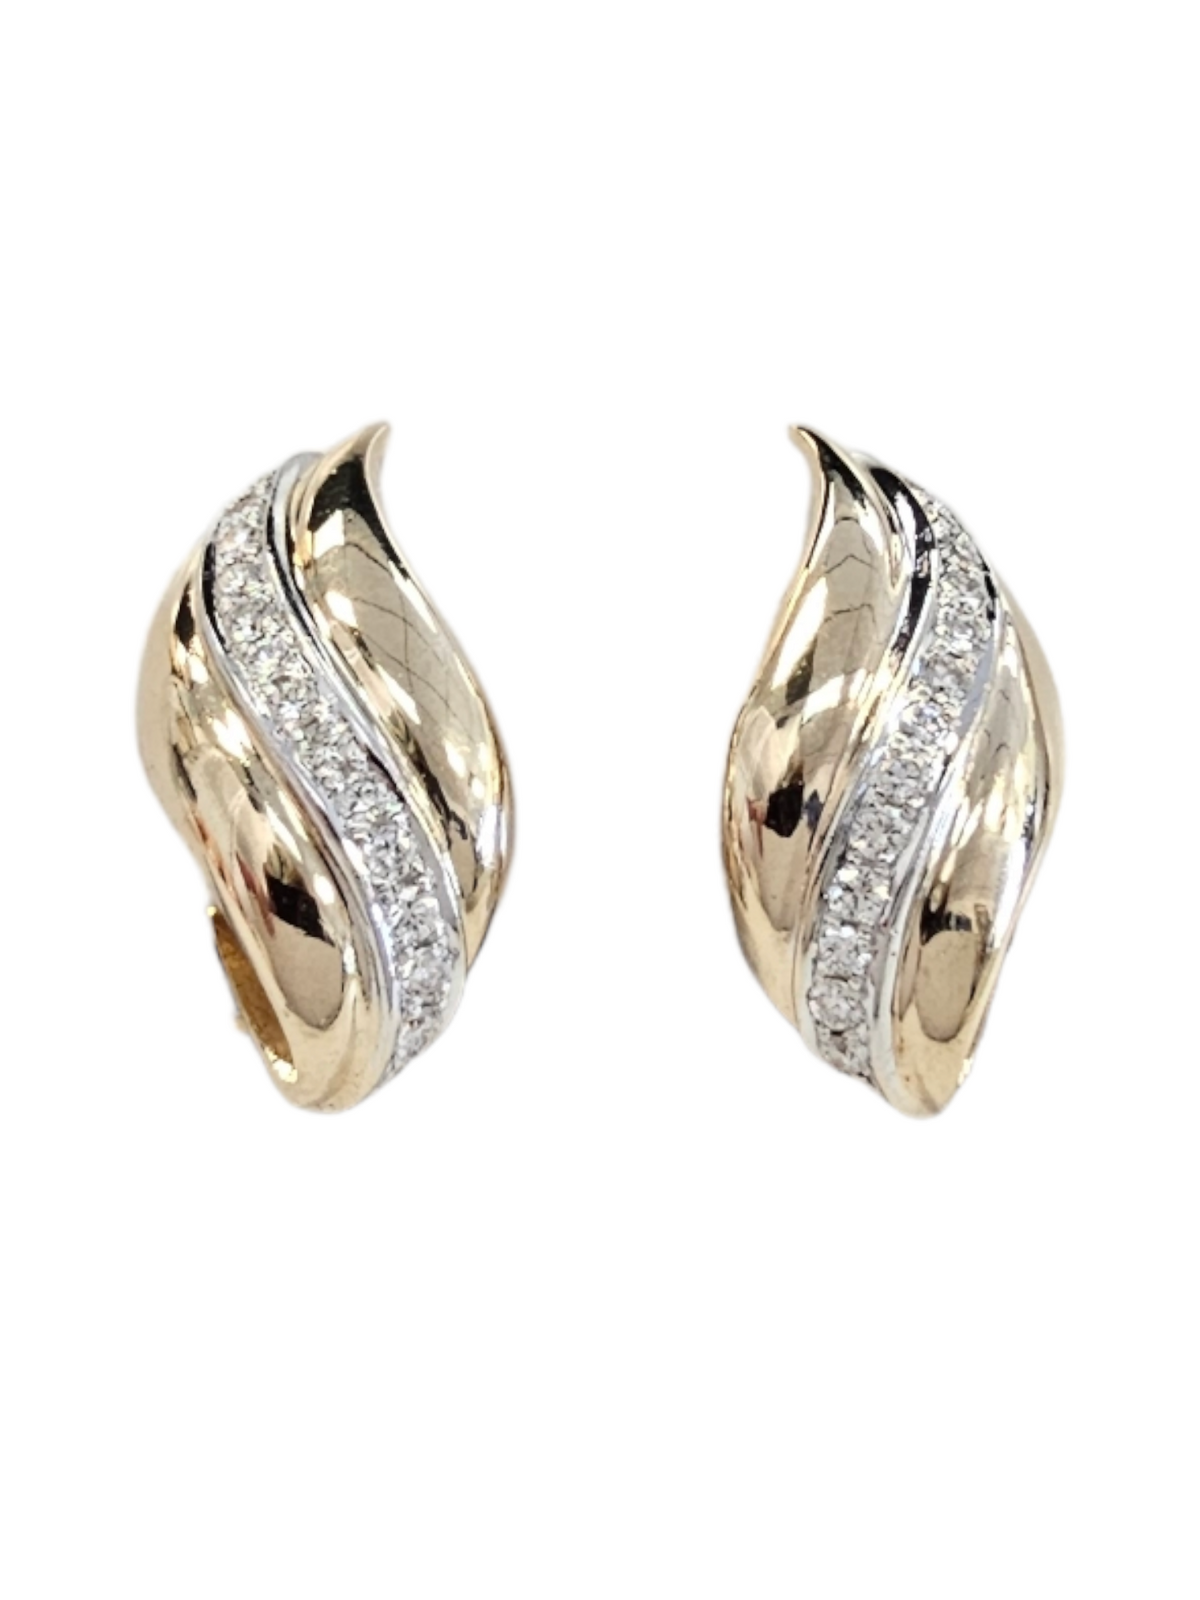 Diamond Earrings, 14kt Yellow Gold Stud earrings